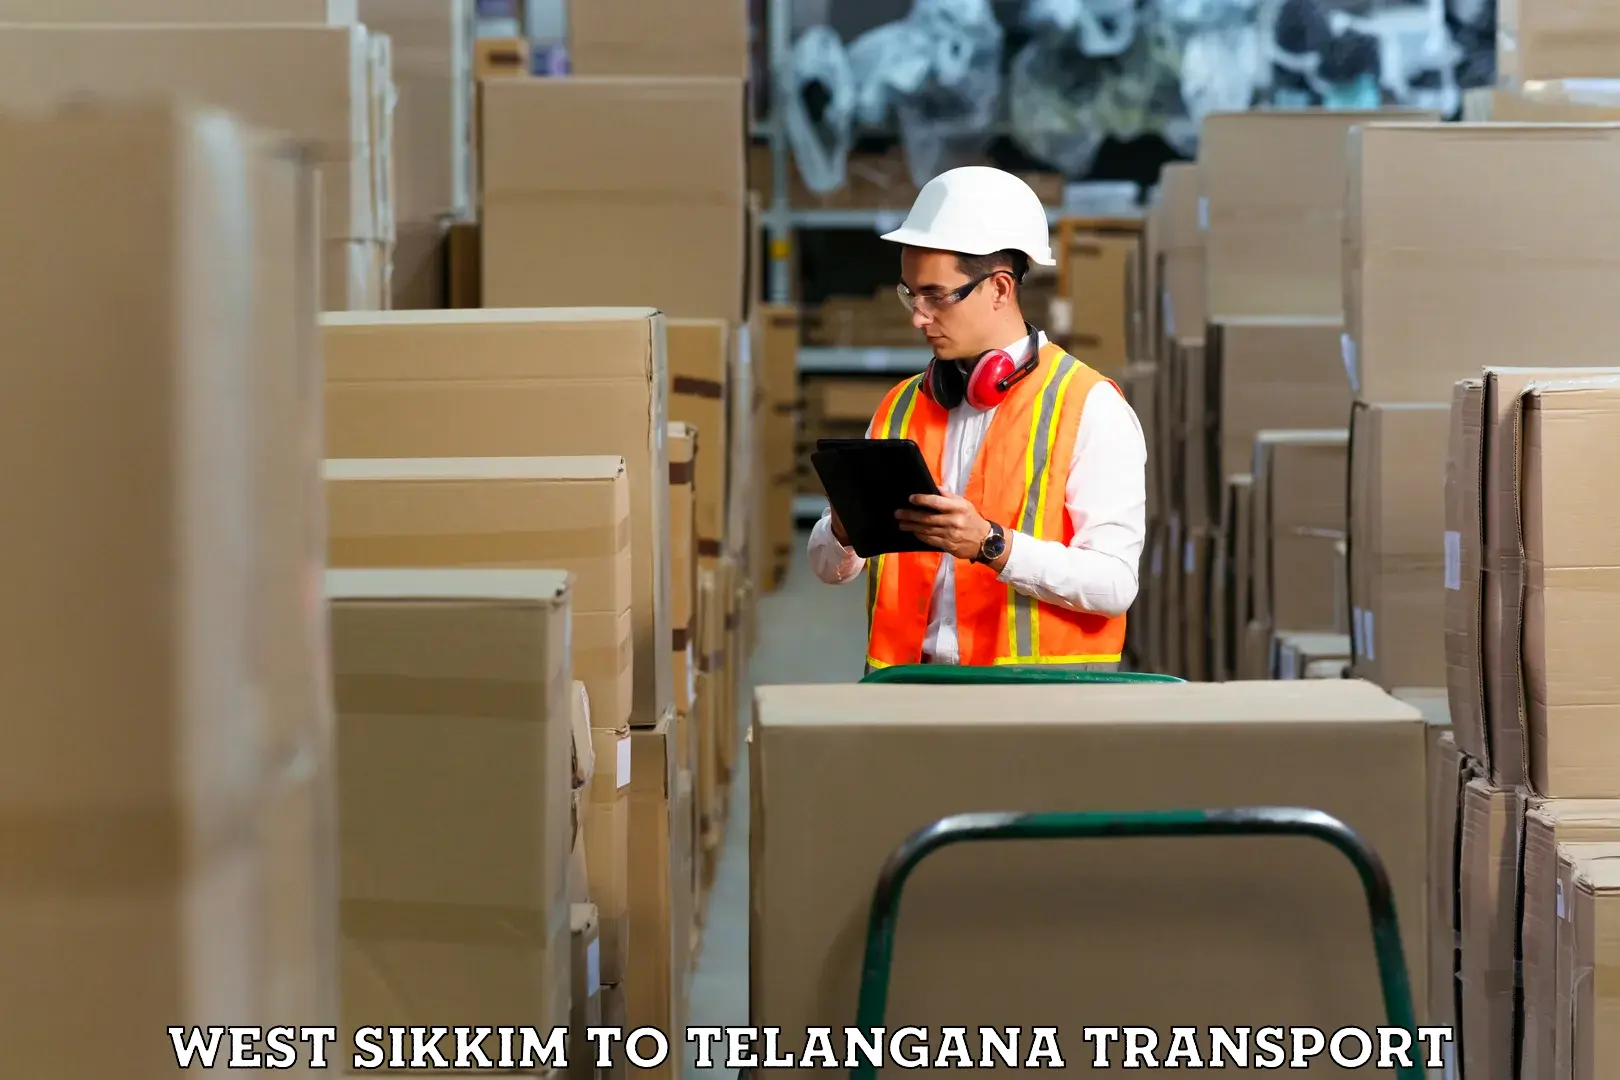 Container transport service West Sikkim to Jainoor